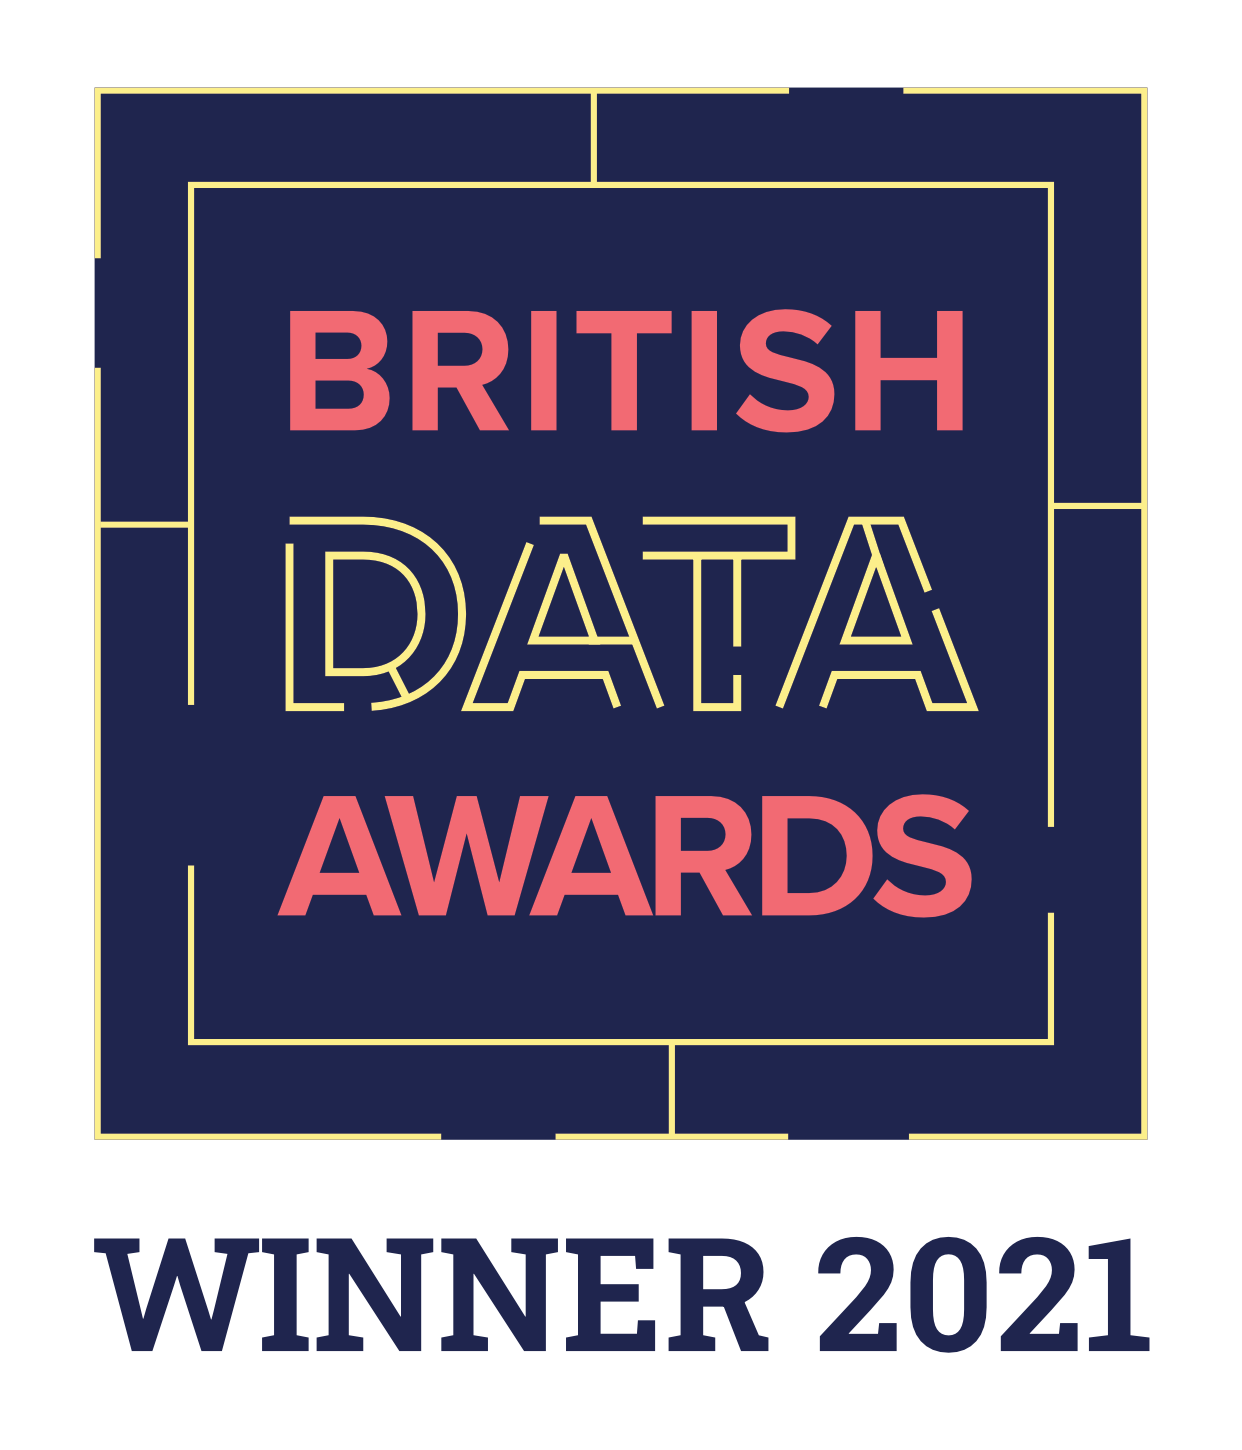 British Data Awards winner badge.